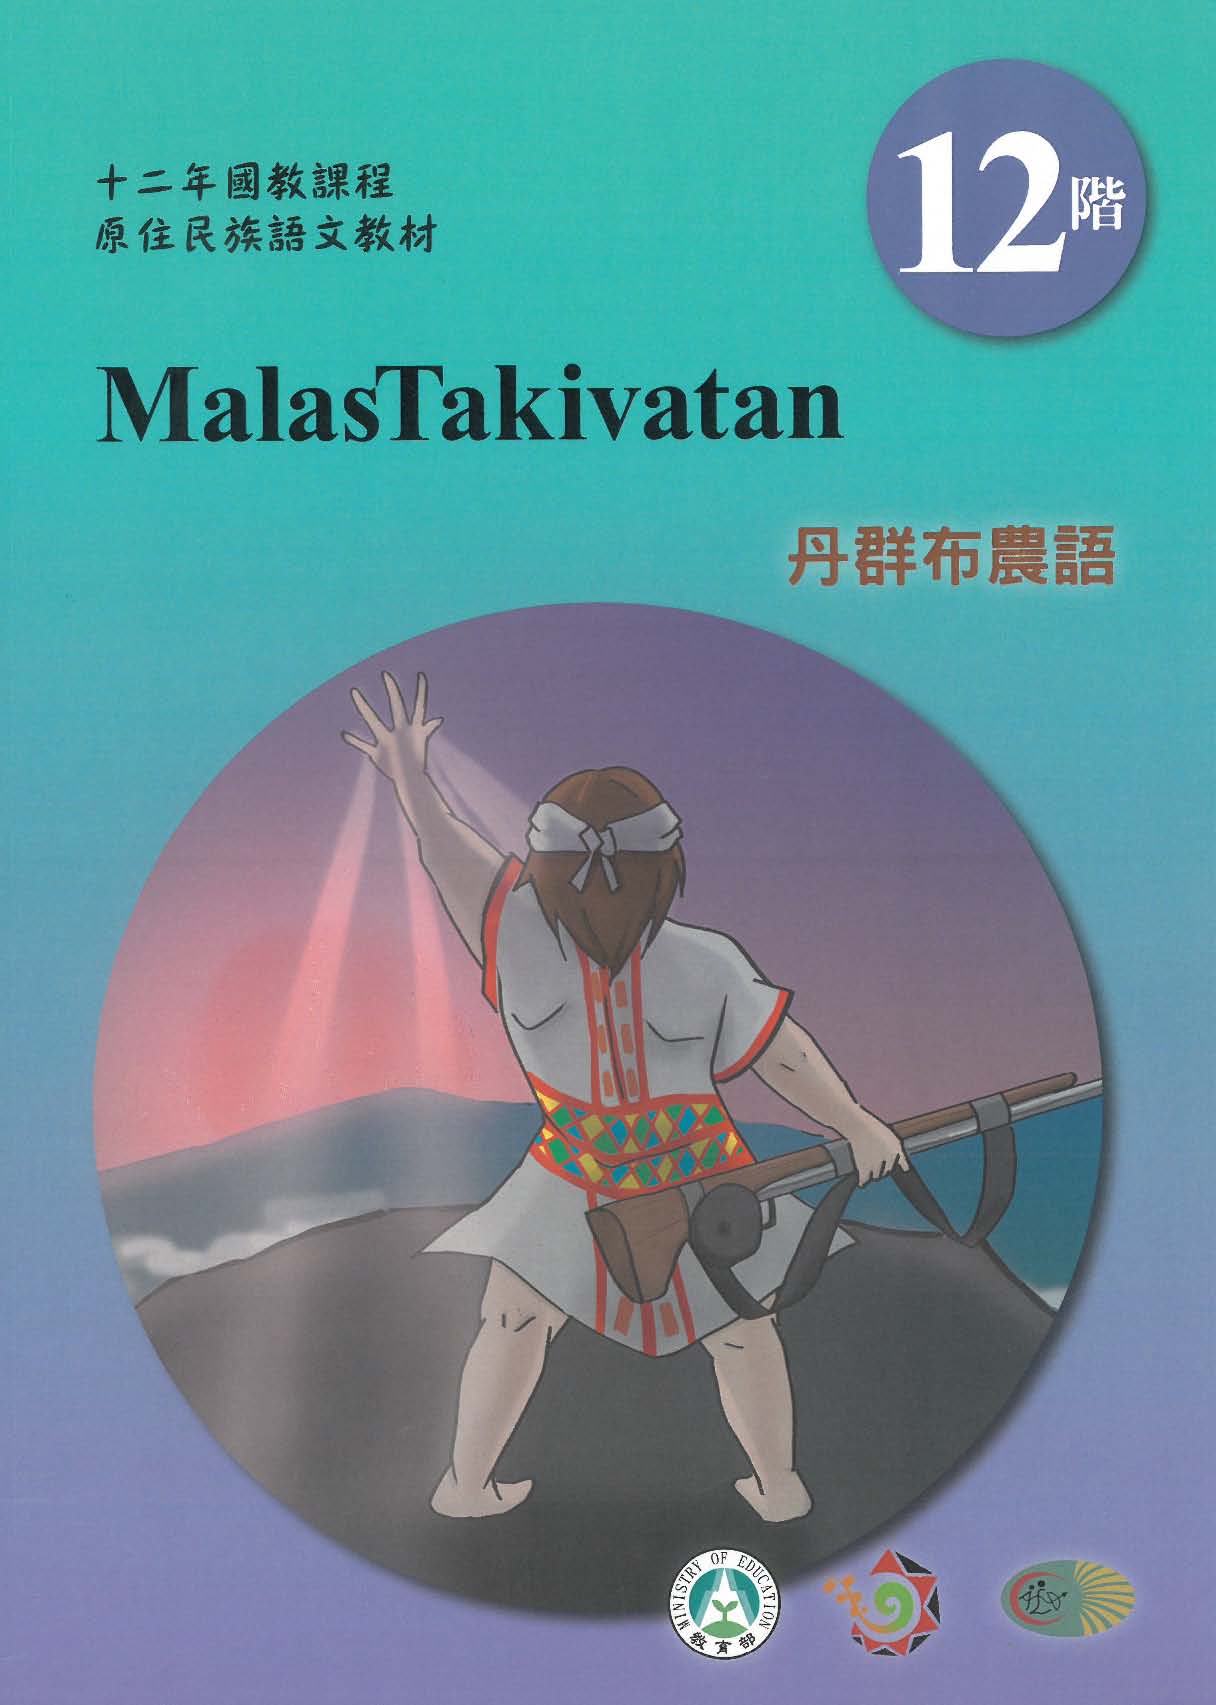 十二年國教原住民族語文教材 丹群布農語 學習手冊 第12階